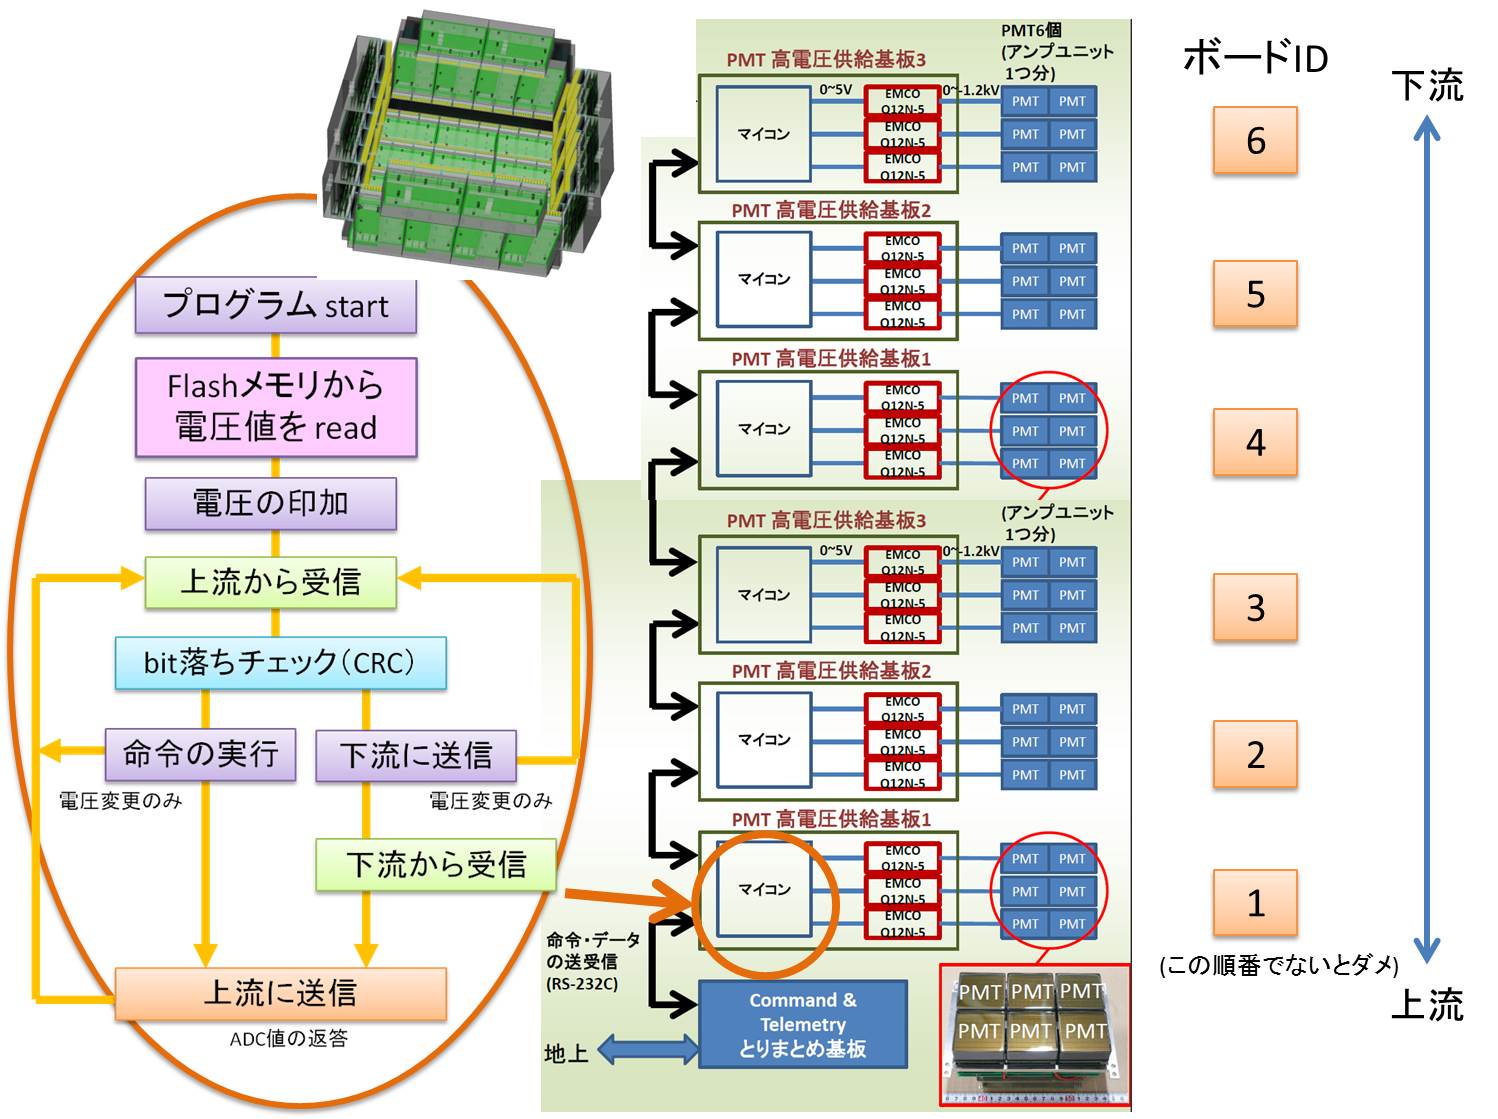 マイコン制御の概念図と複数枚の基板間の通信の概念図